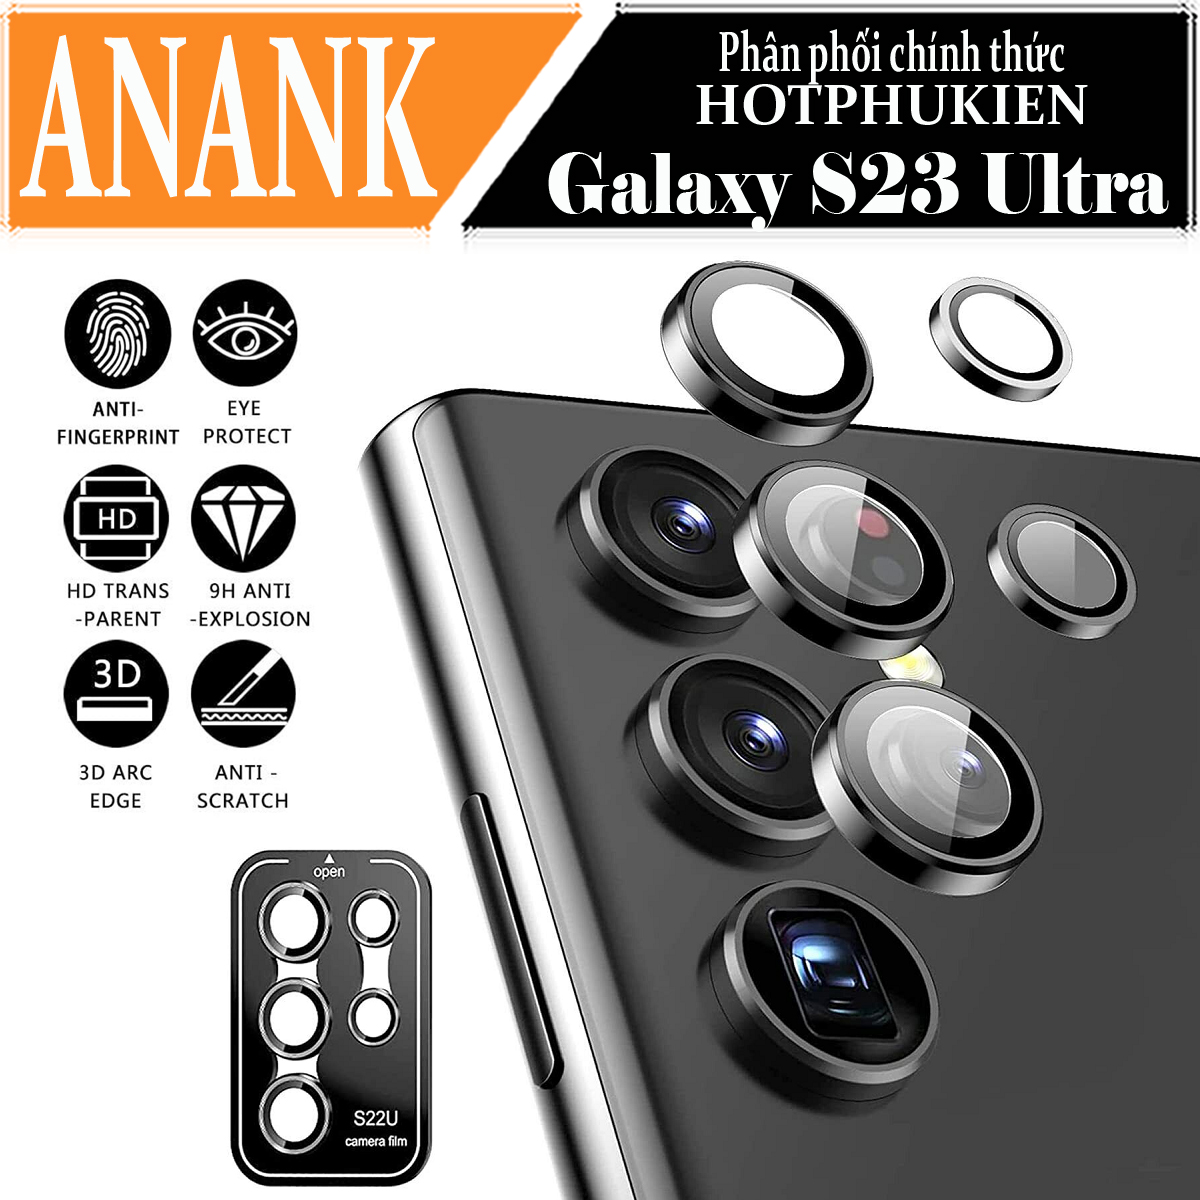 Tấm dán kính cường lực Camera cho Samsung Galaxy S23 Ultra hiệu ANANK - công nghệ kết dính tự động, mặt kính AGC sắc nét với độ cứng 9H, trang bị khung tự dán dễ dàng tự dán ở nhà